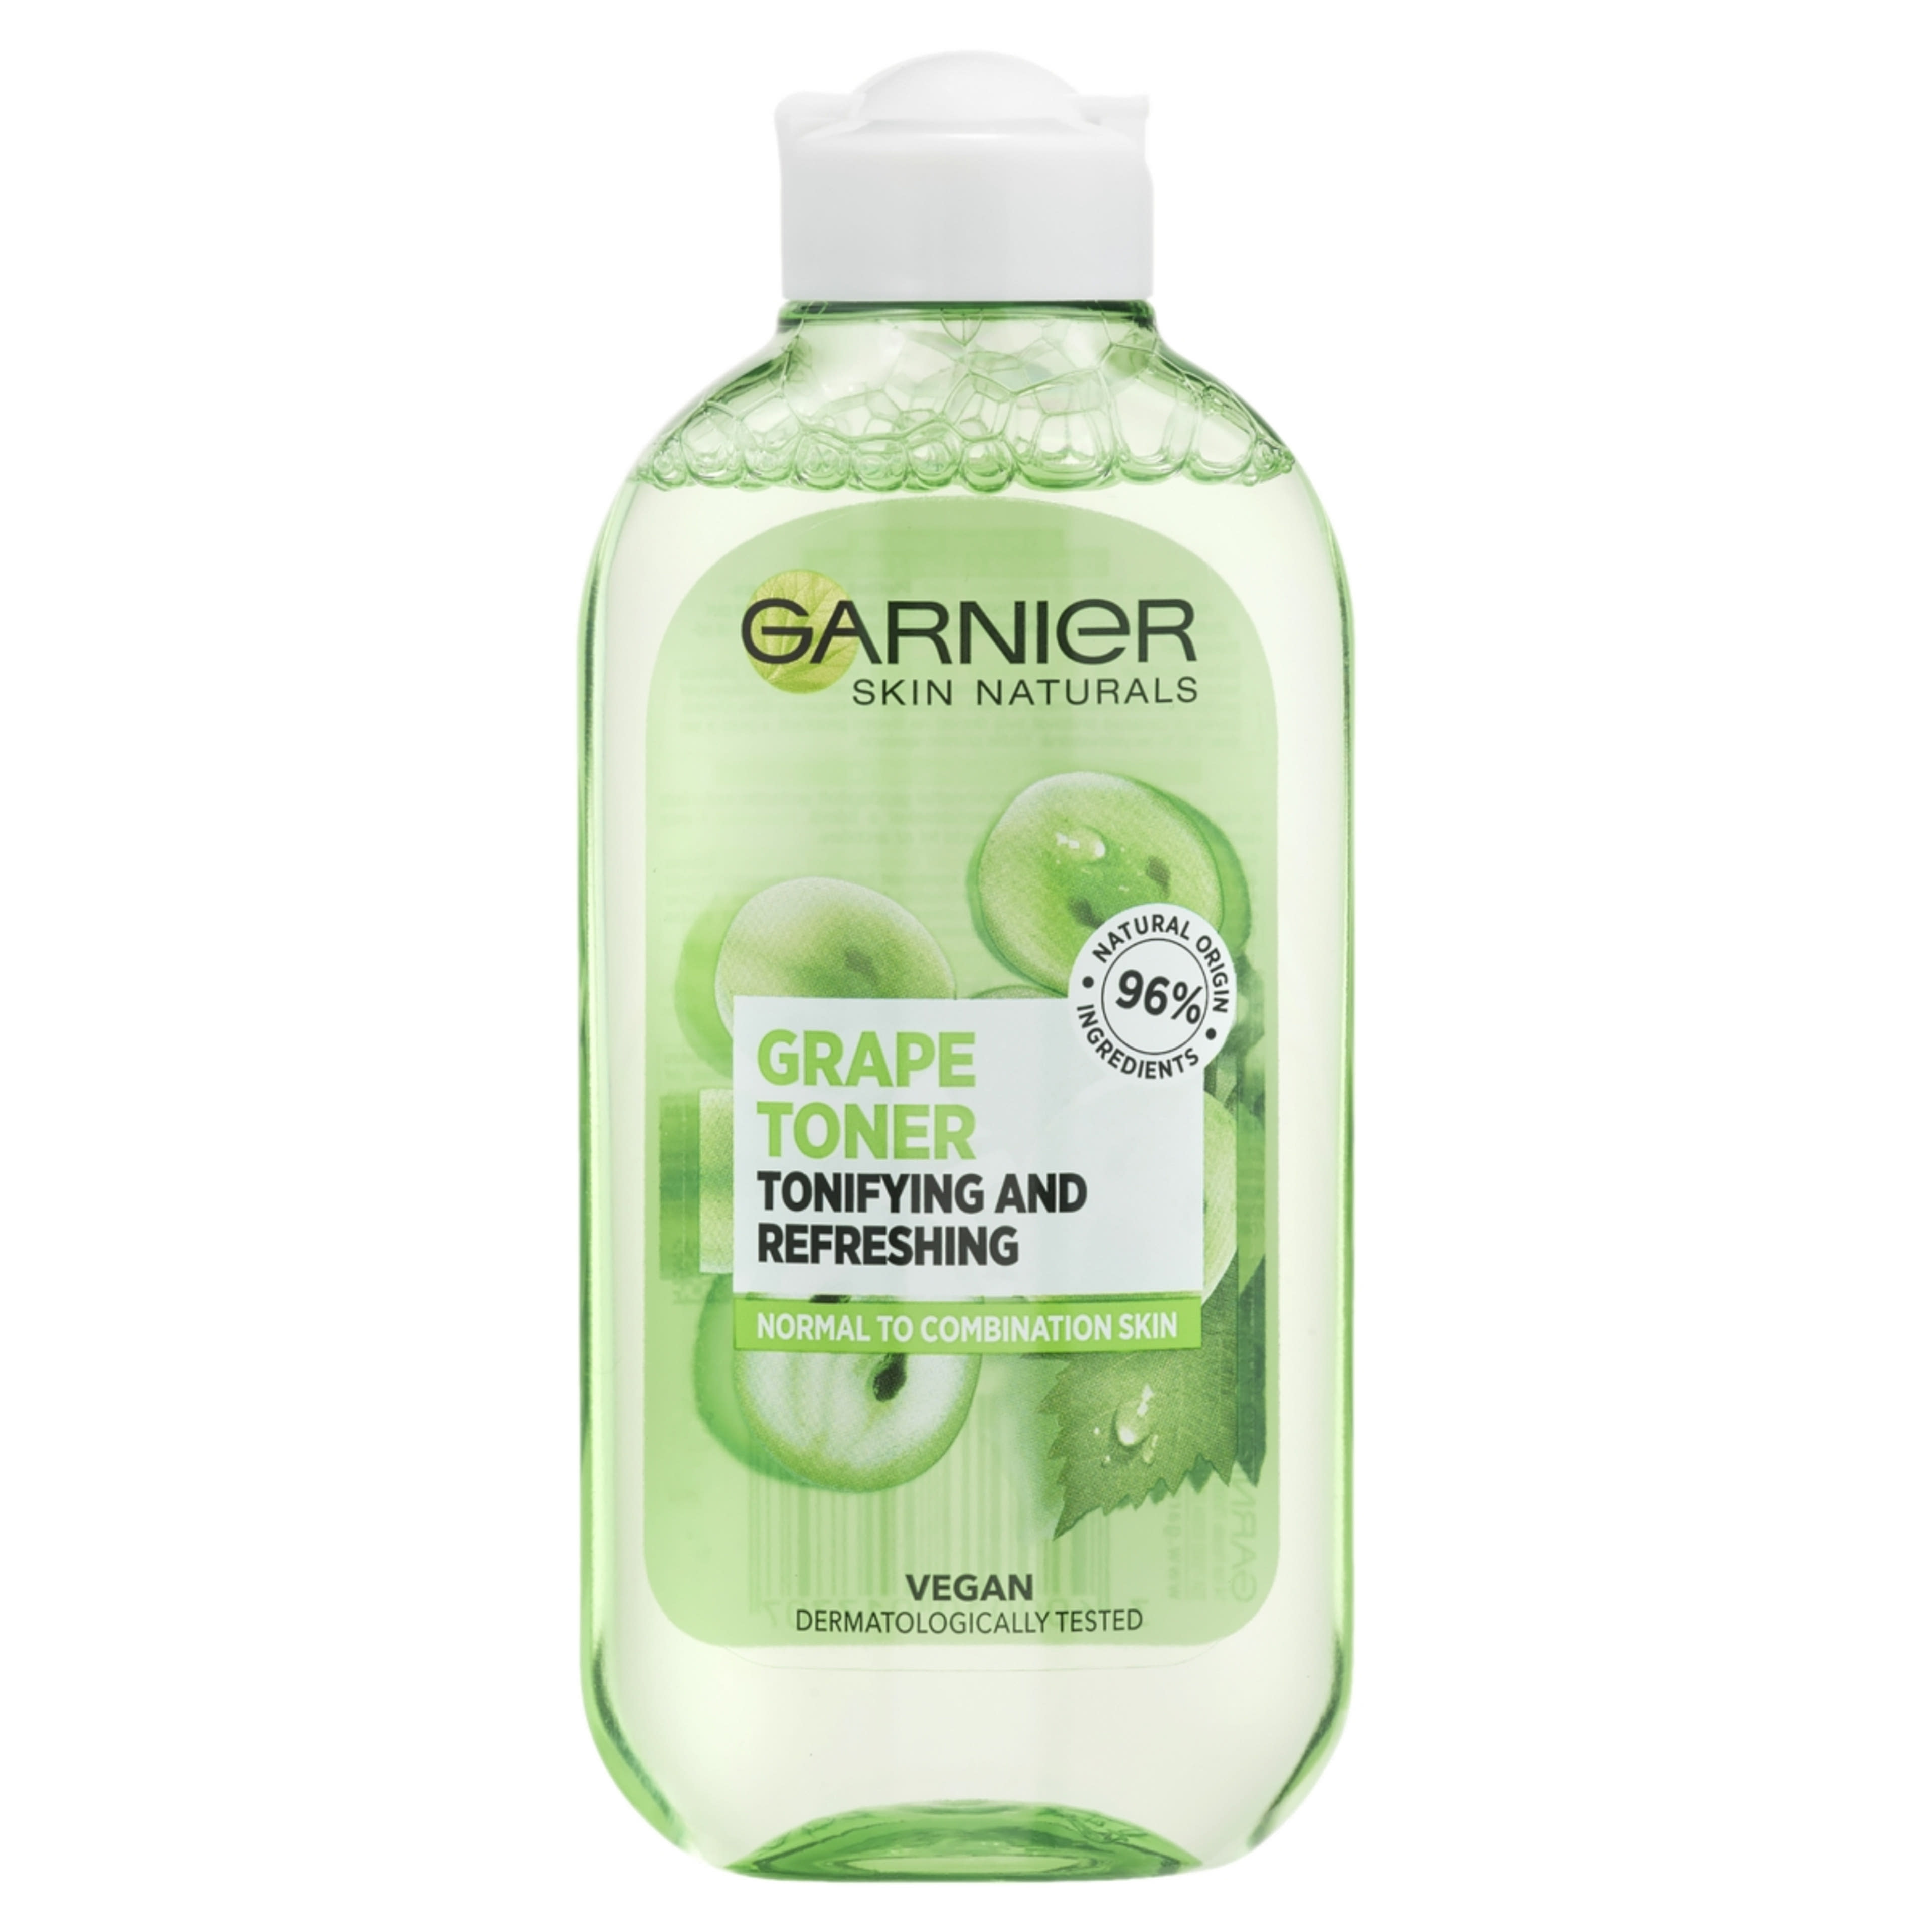 Garnier Skin Naturals Botanicals Arctisztító Tonik Szőlőkivonattal - 200 ml